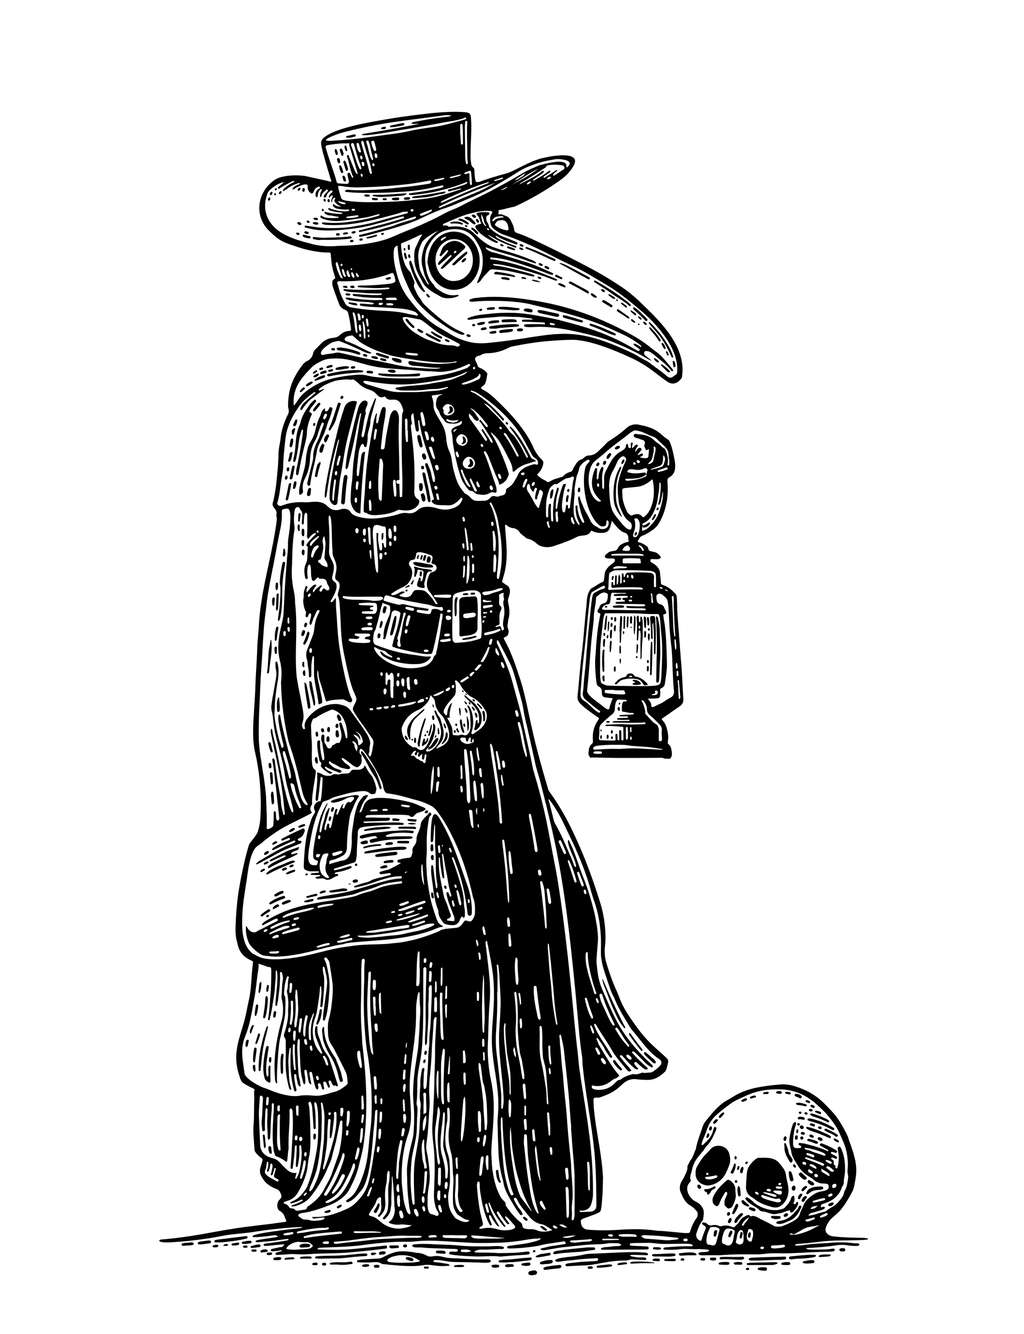 Caricature d'un médecin pendant une épidémie de peste. L'utilisation effective de cette tenue par les médecins est néanmoins incertaine. © MoreVector, Adobe Stock